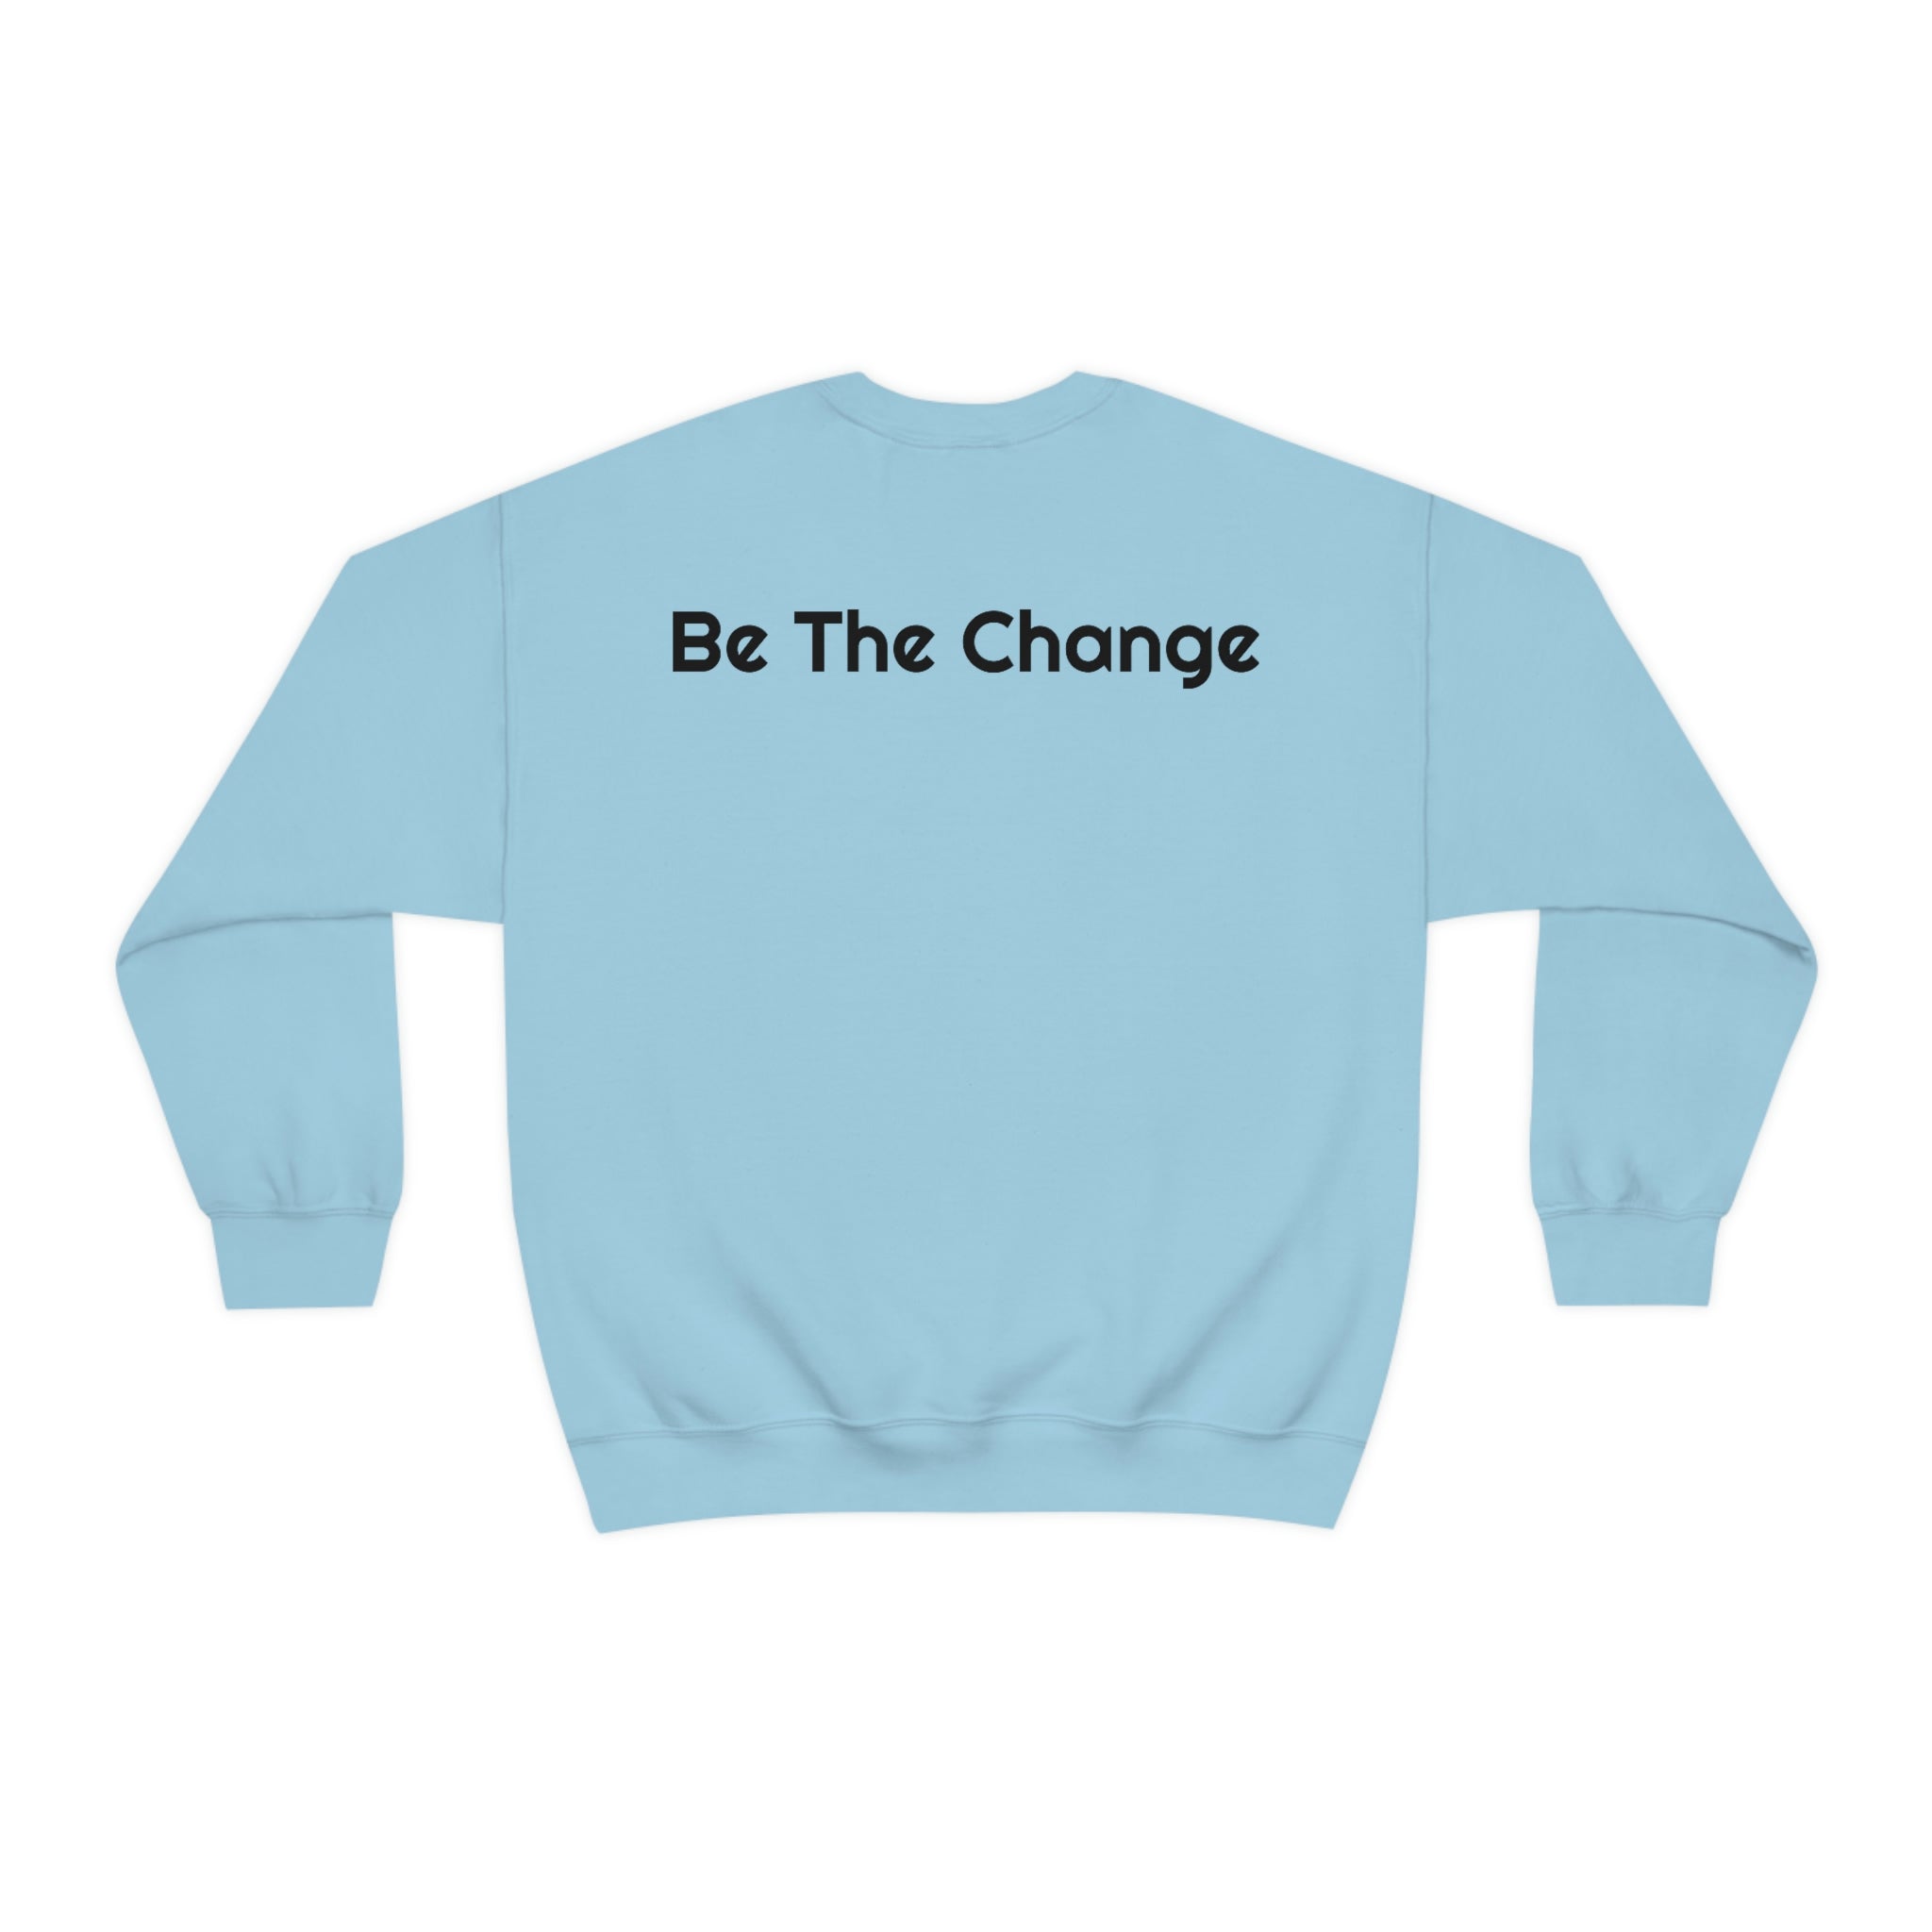 "Be The Change" Unisex Sweatshirt